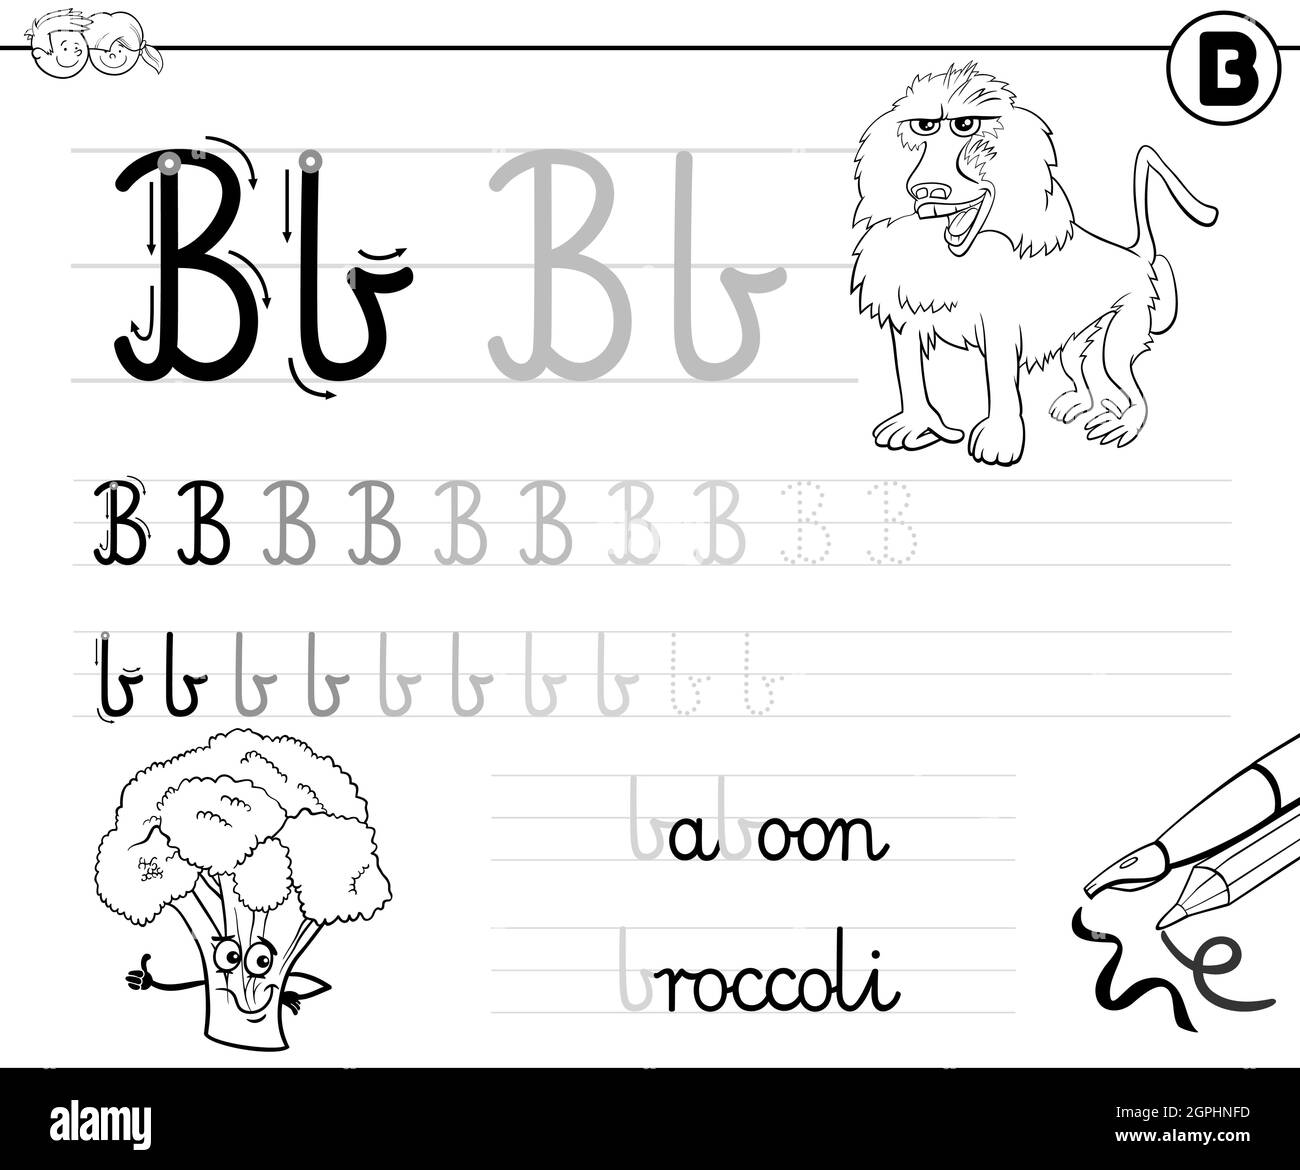 Imparare a scrivere la lettera B libro degli esercizi per i bambini  Immagine e Vettoriale - Alamy